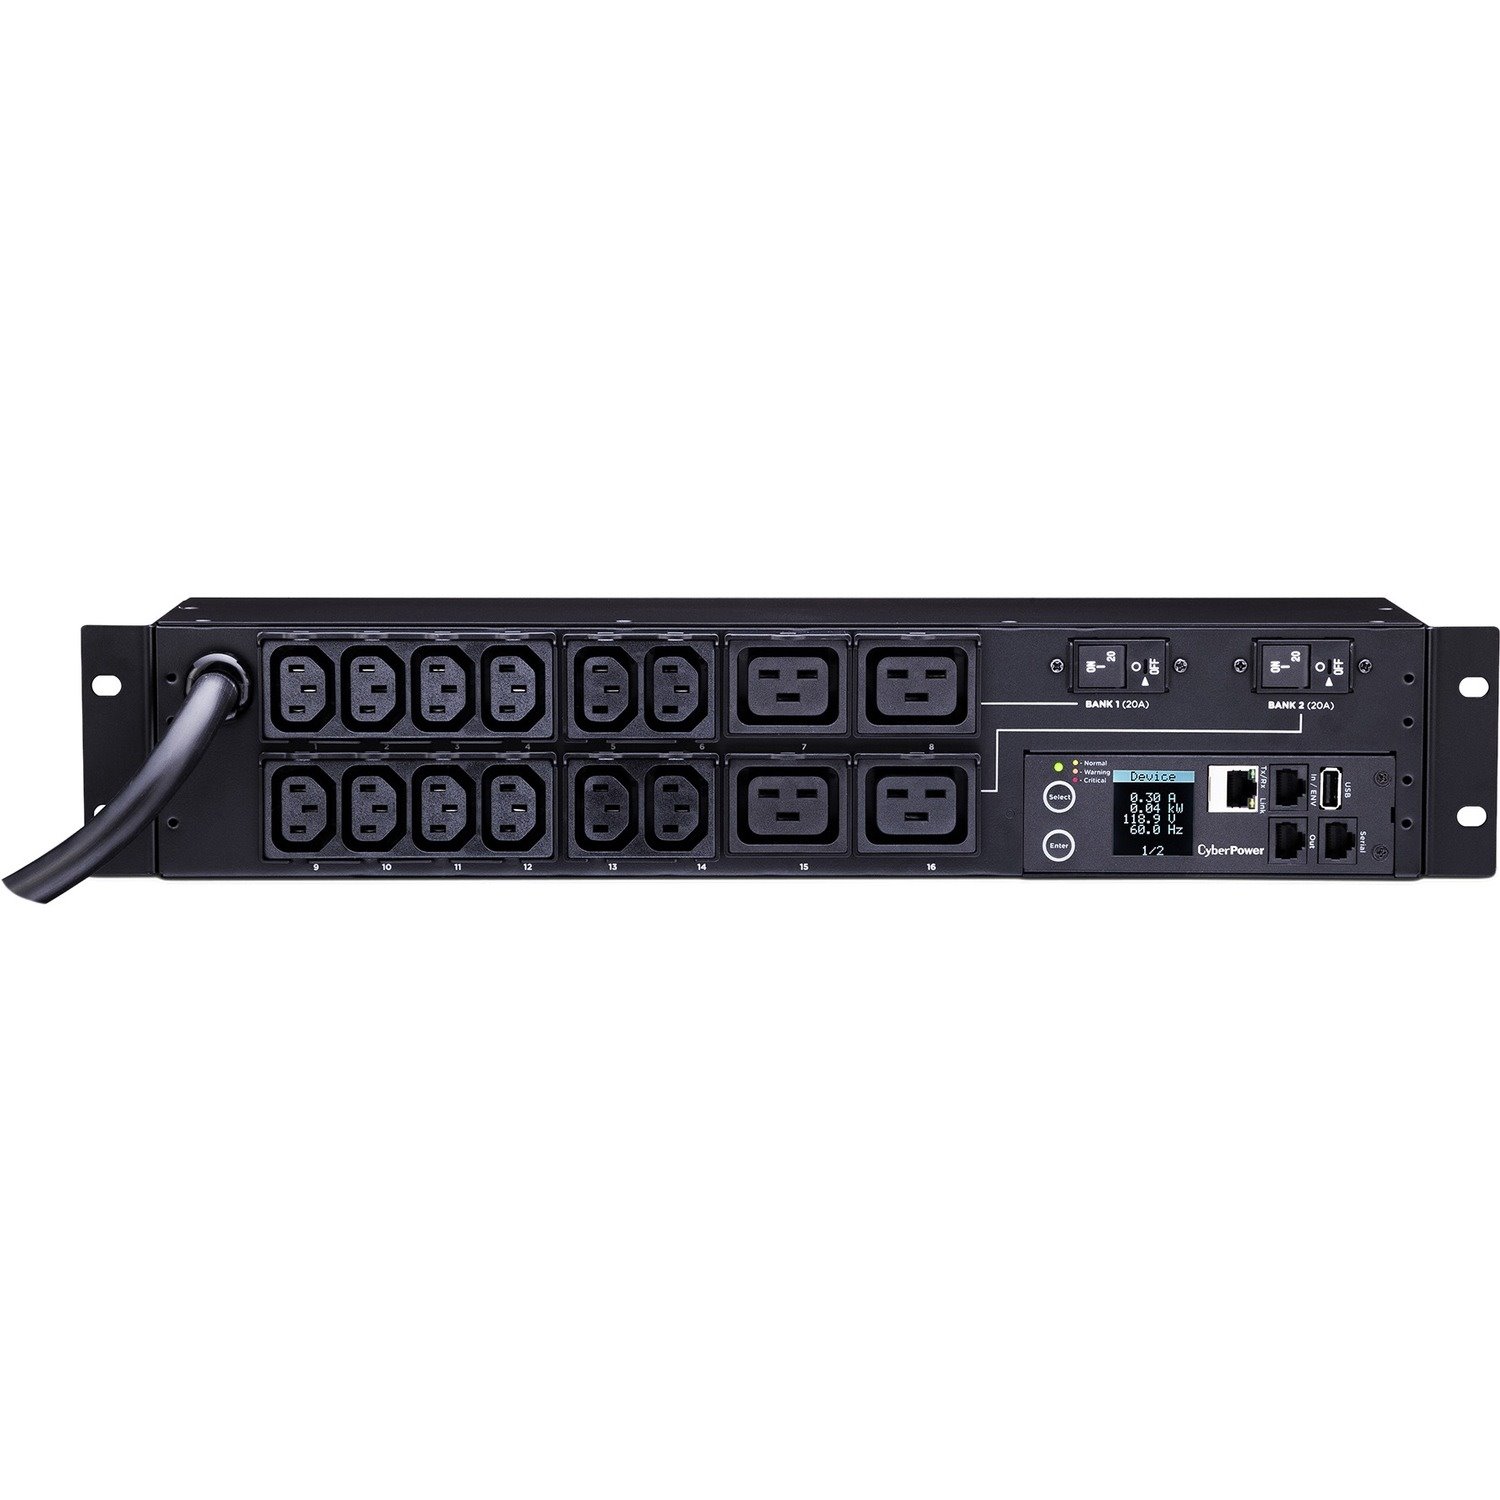 CyberPower PDU31008 Single Phase 200 - 240 VAC 30A Monitored PDU